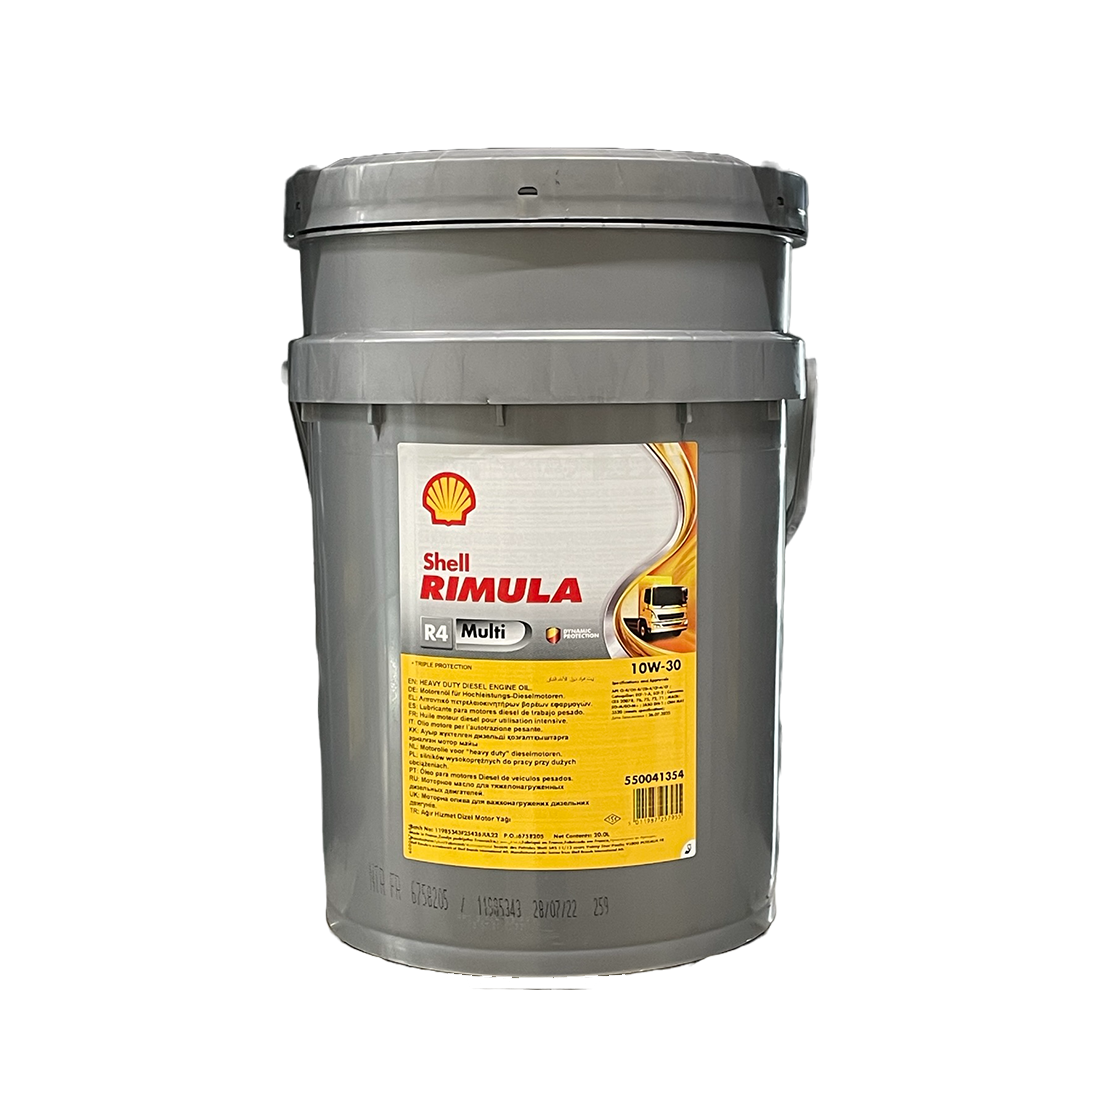 Mineralolja Shell Rimula R4 Multi 10W-30, 20L